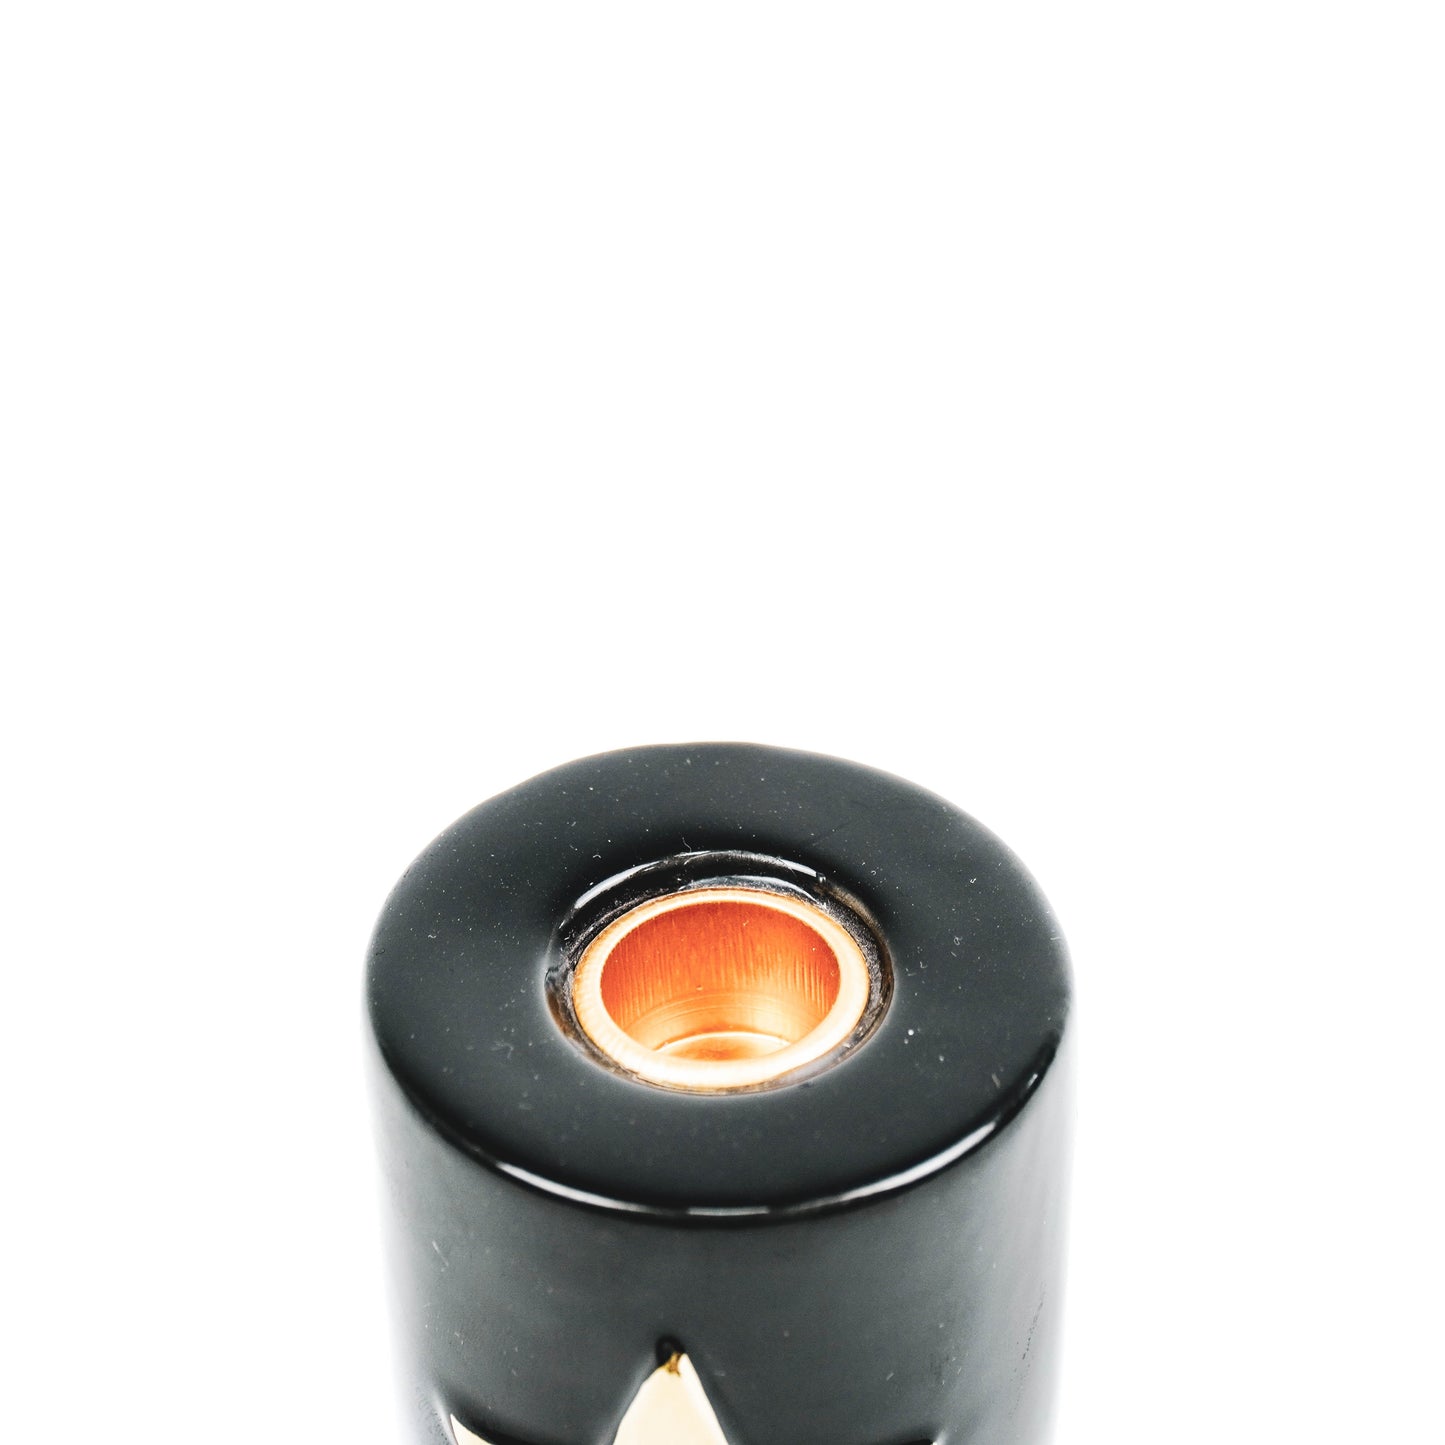 Housevitamin Ster Cilinder Kandelaar - Zwart/Goud - 6x6x8cm